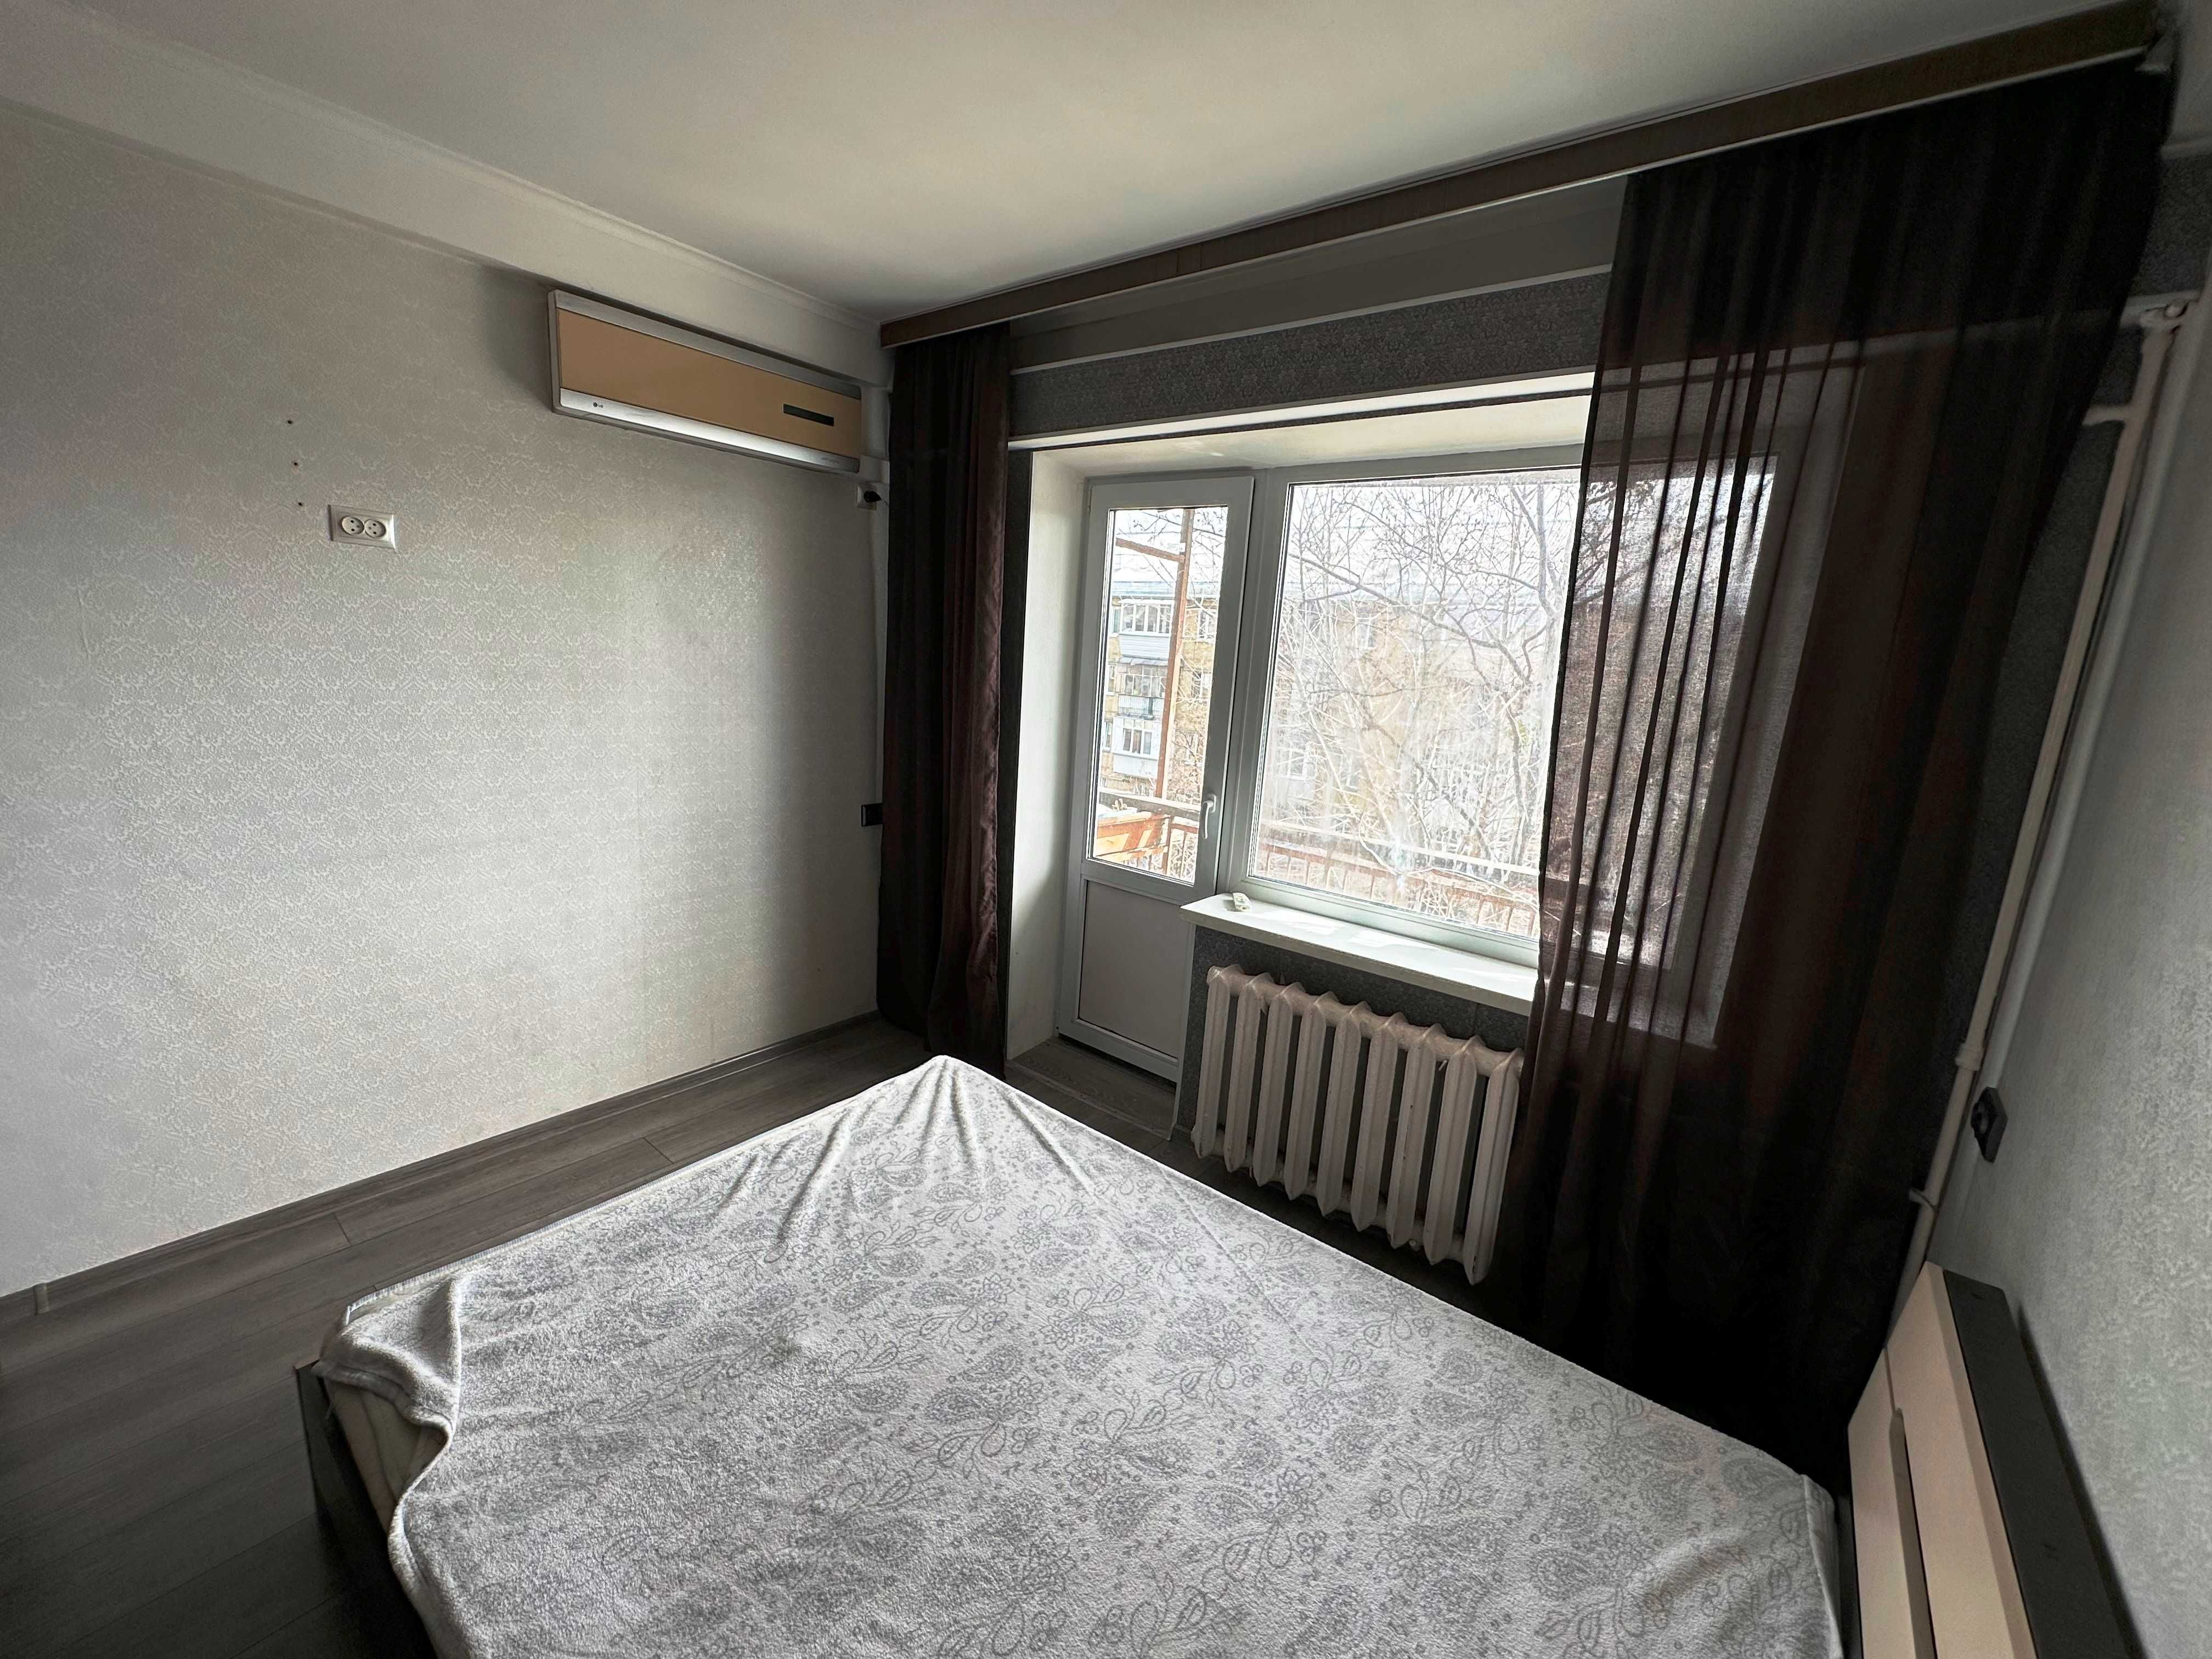 Продам 2-к раздельную квартиру в хорошем состоянии на Соцгороде!